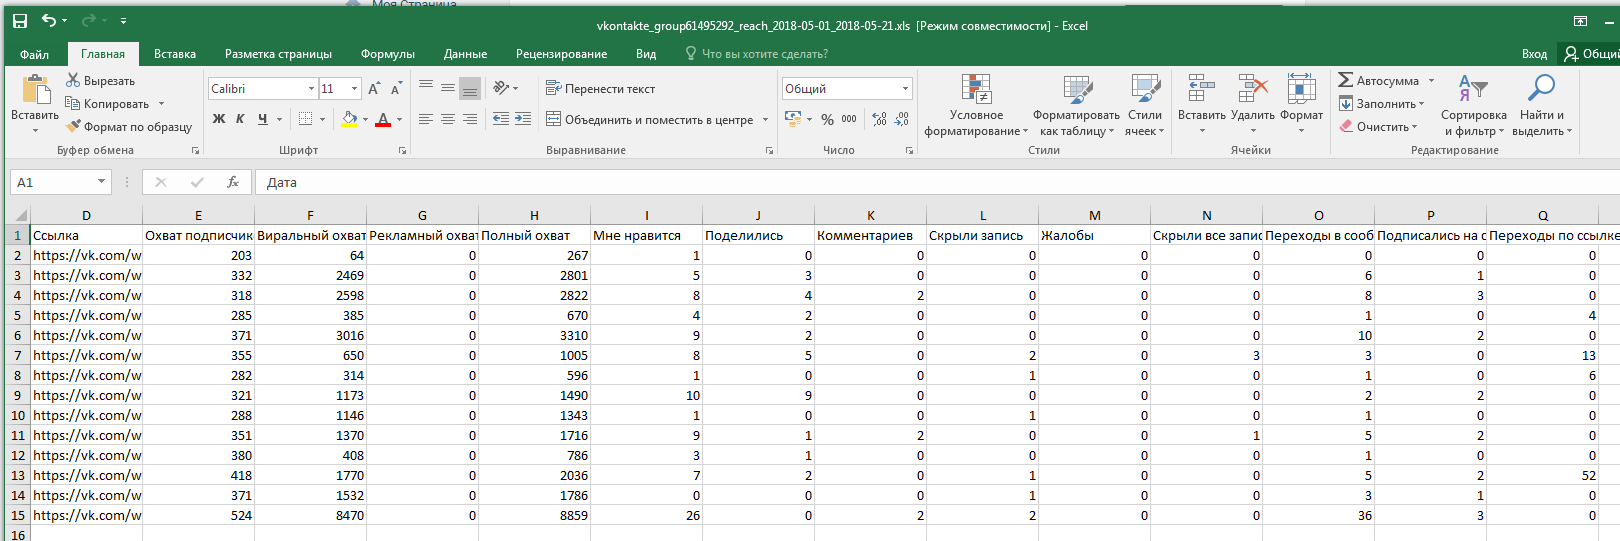 Работа со статистическими данными в Excel